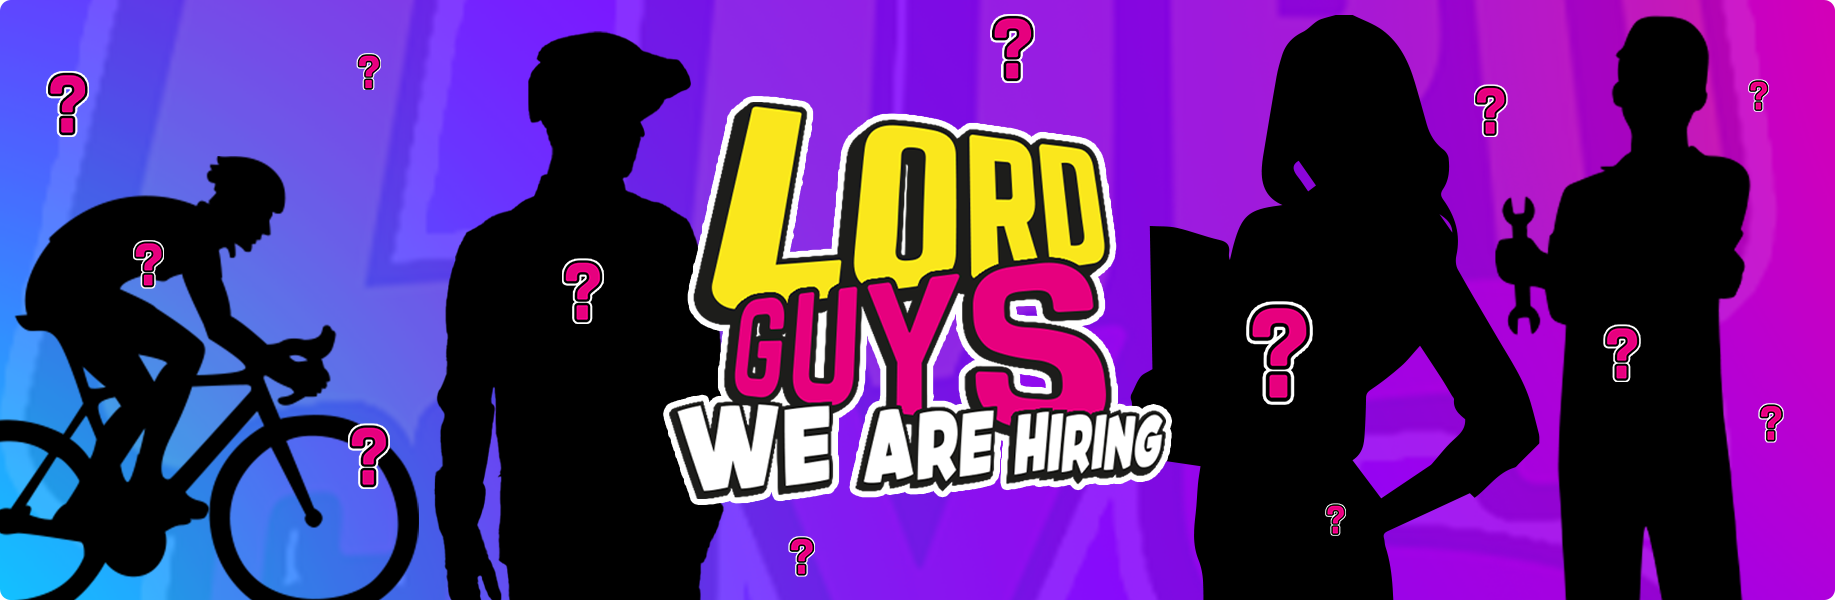 LordGun: möchten Sie mit uns arbeiten?